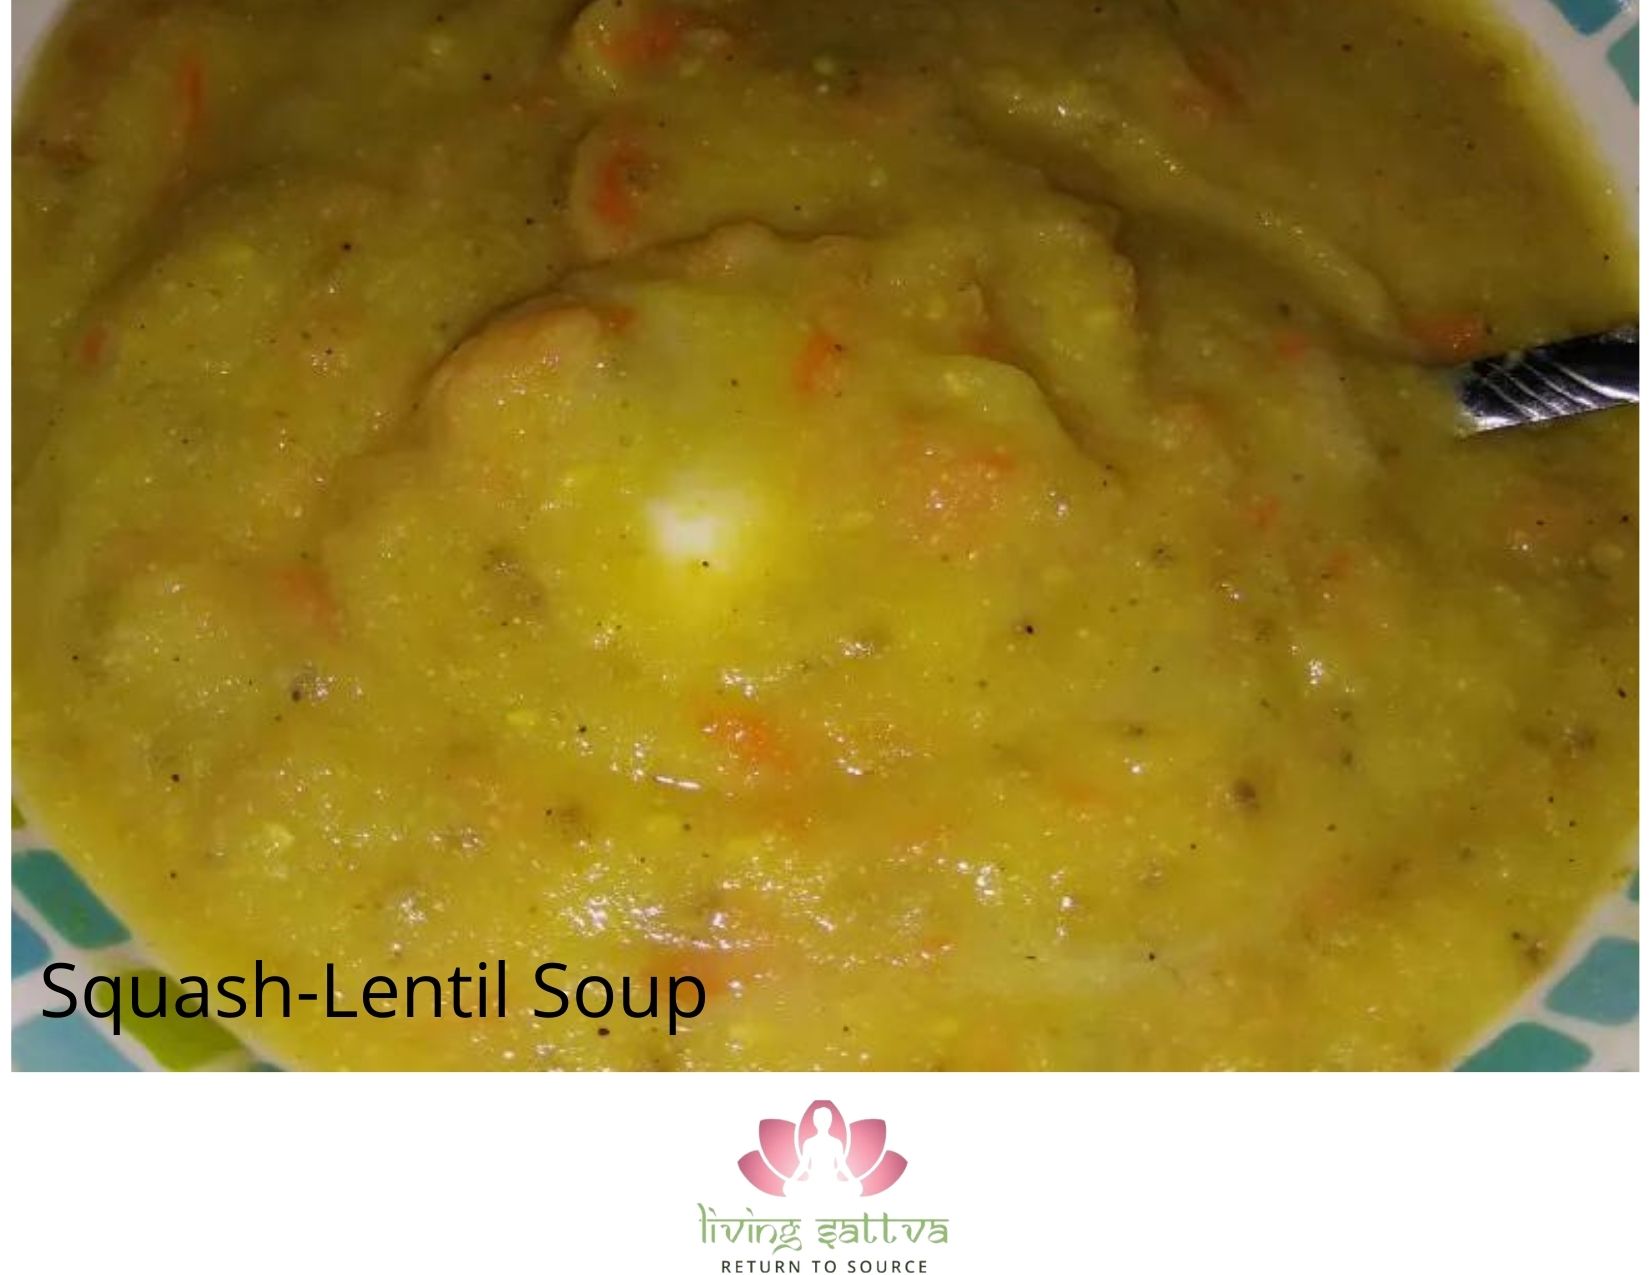 Squash-Lentil Soup